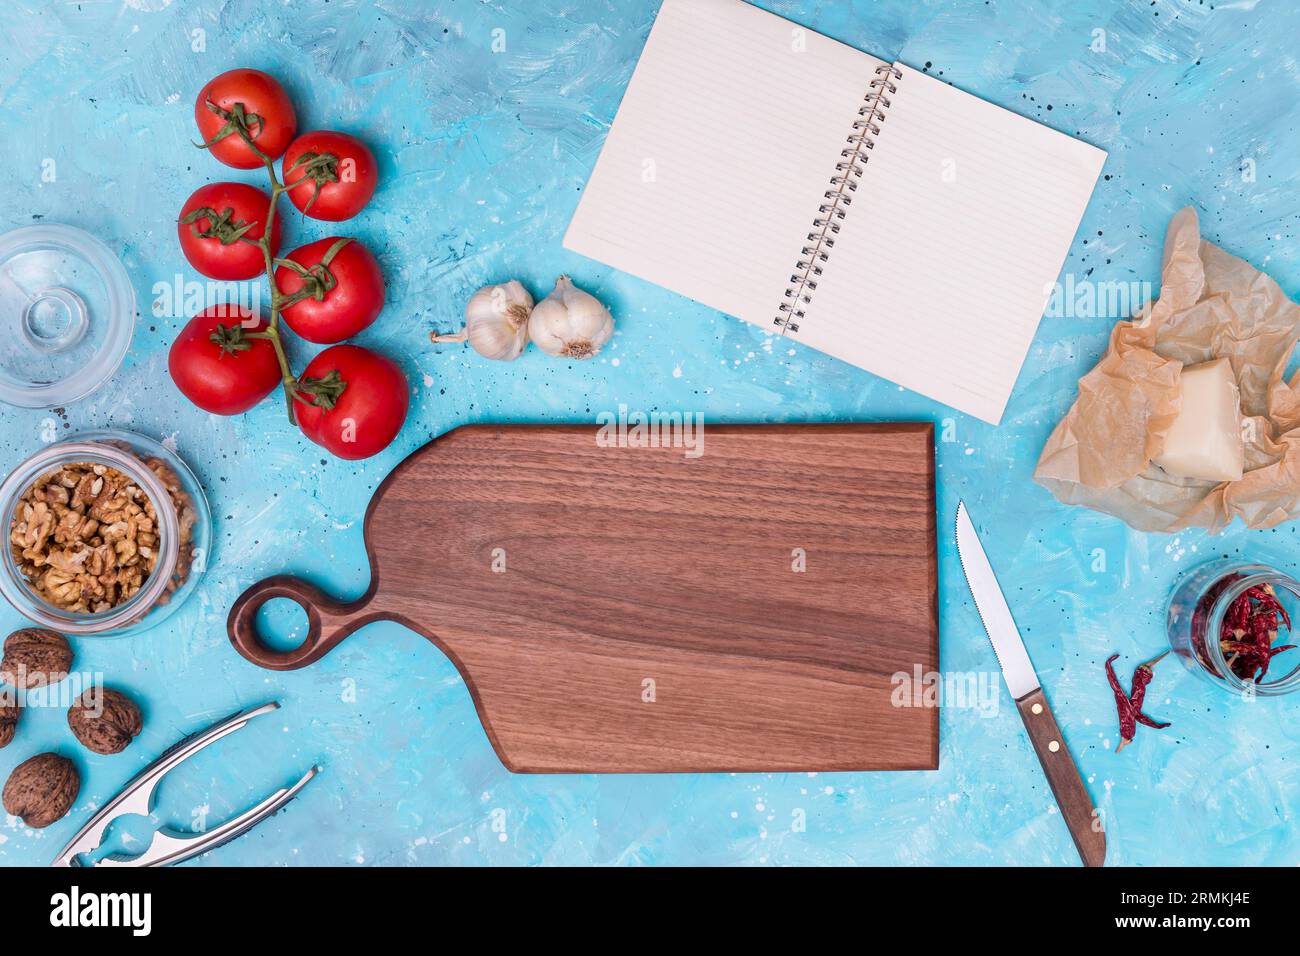 Utensili da cucina con ingredienti sani con diario vuoto aperto sfondo testurizzato blu Foto Stock